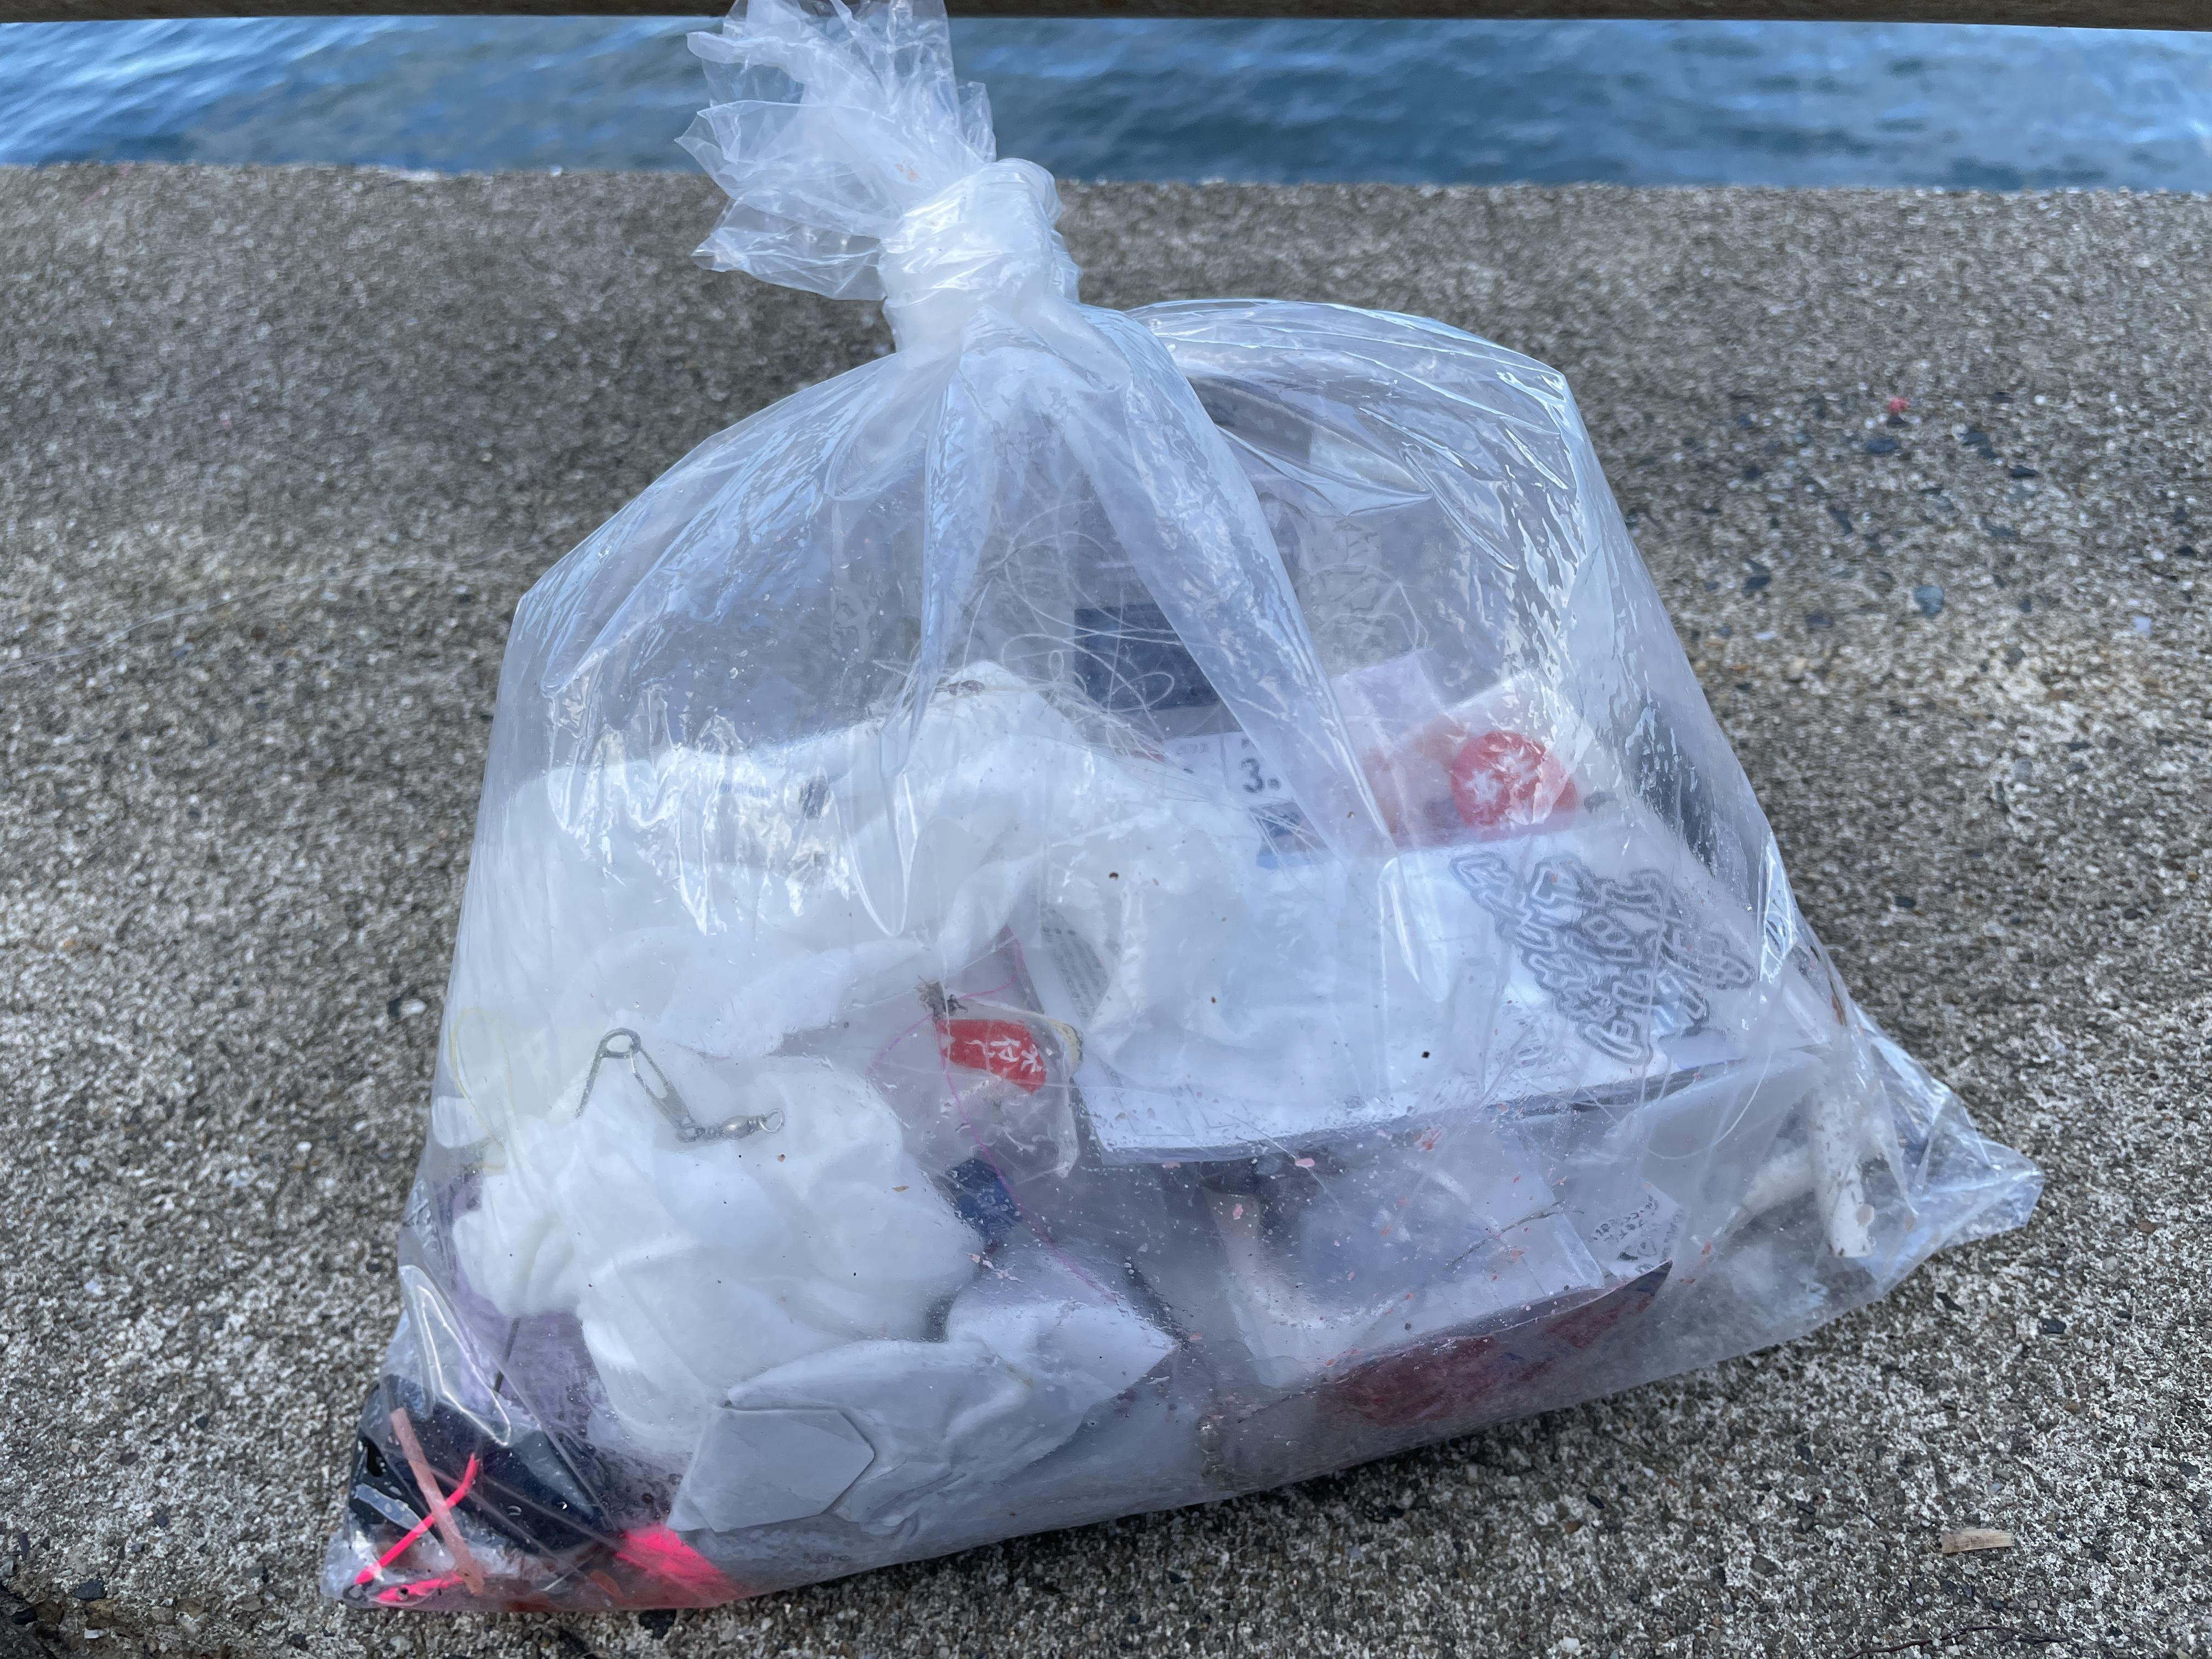 吸い殻や仕掛のパッケージなどのゴミが多数...。
釣りの後は釣り場清掃にご協力お願い致します！